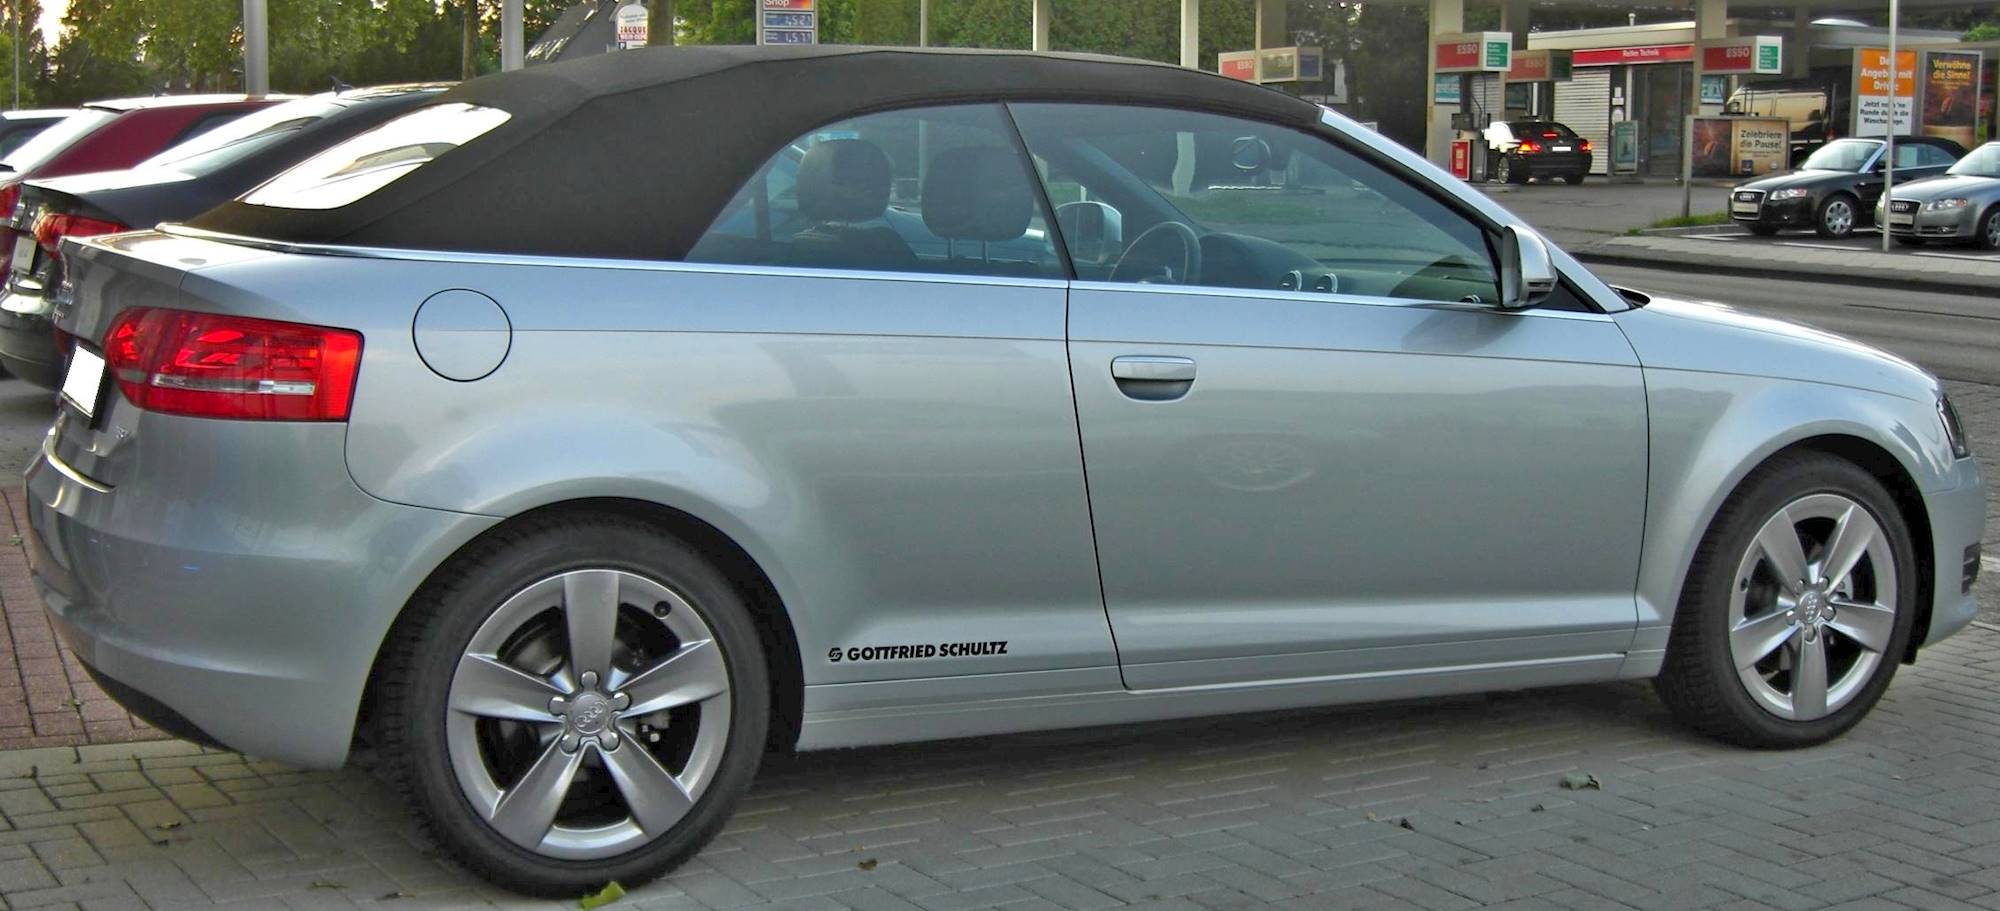 2008 Audi A3 2.0T - Wagon 2.0L Turbo Manual